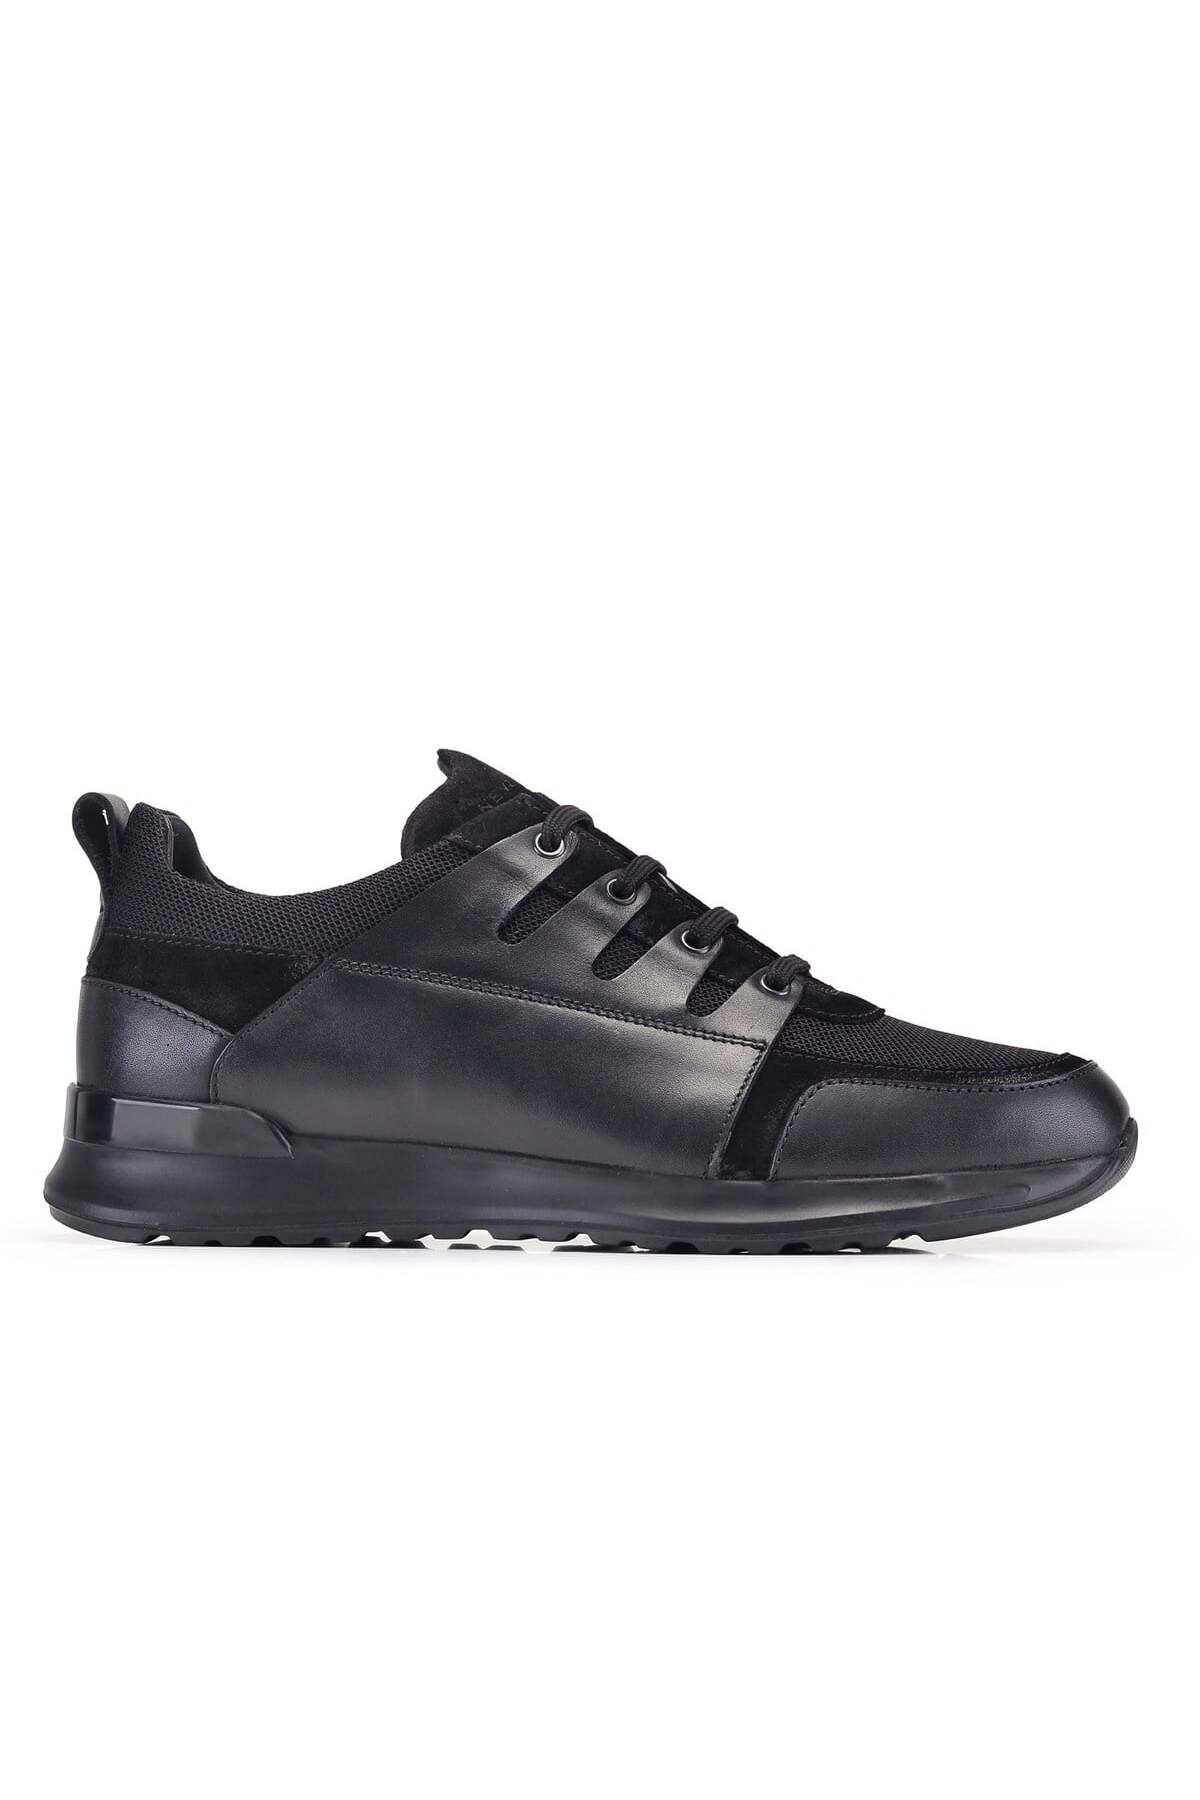 Nevzat Onay Siyah Tekstil Sneaker Erkek Ayakkabı -11783-